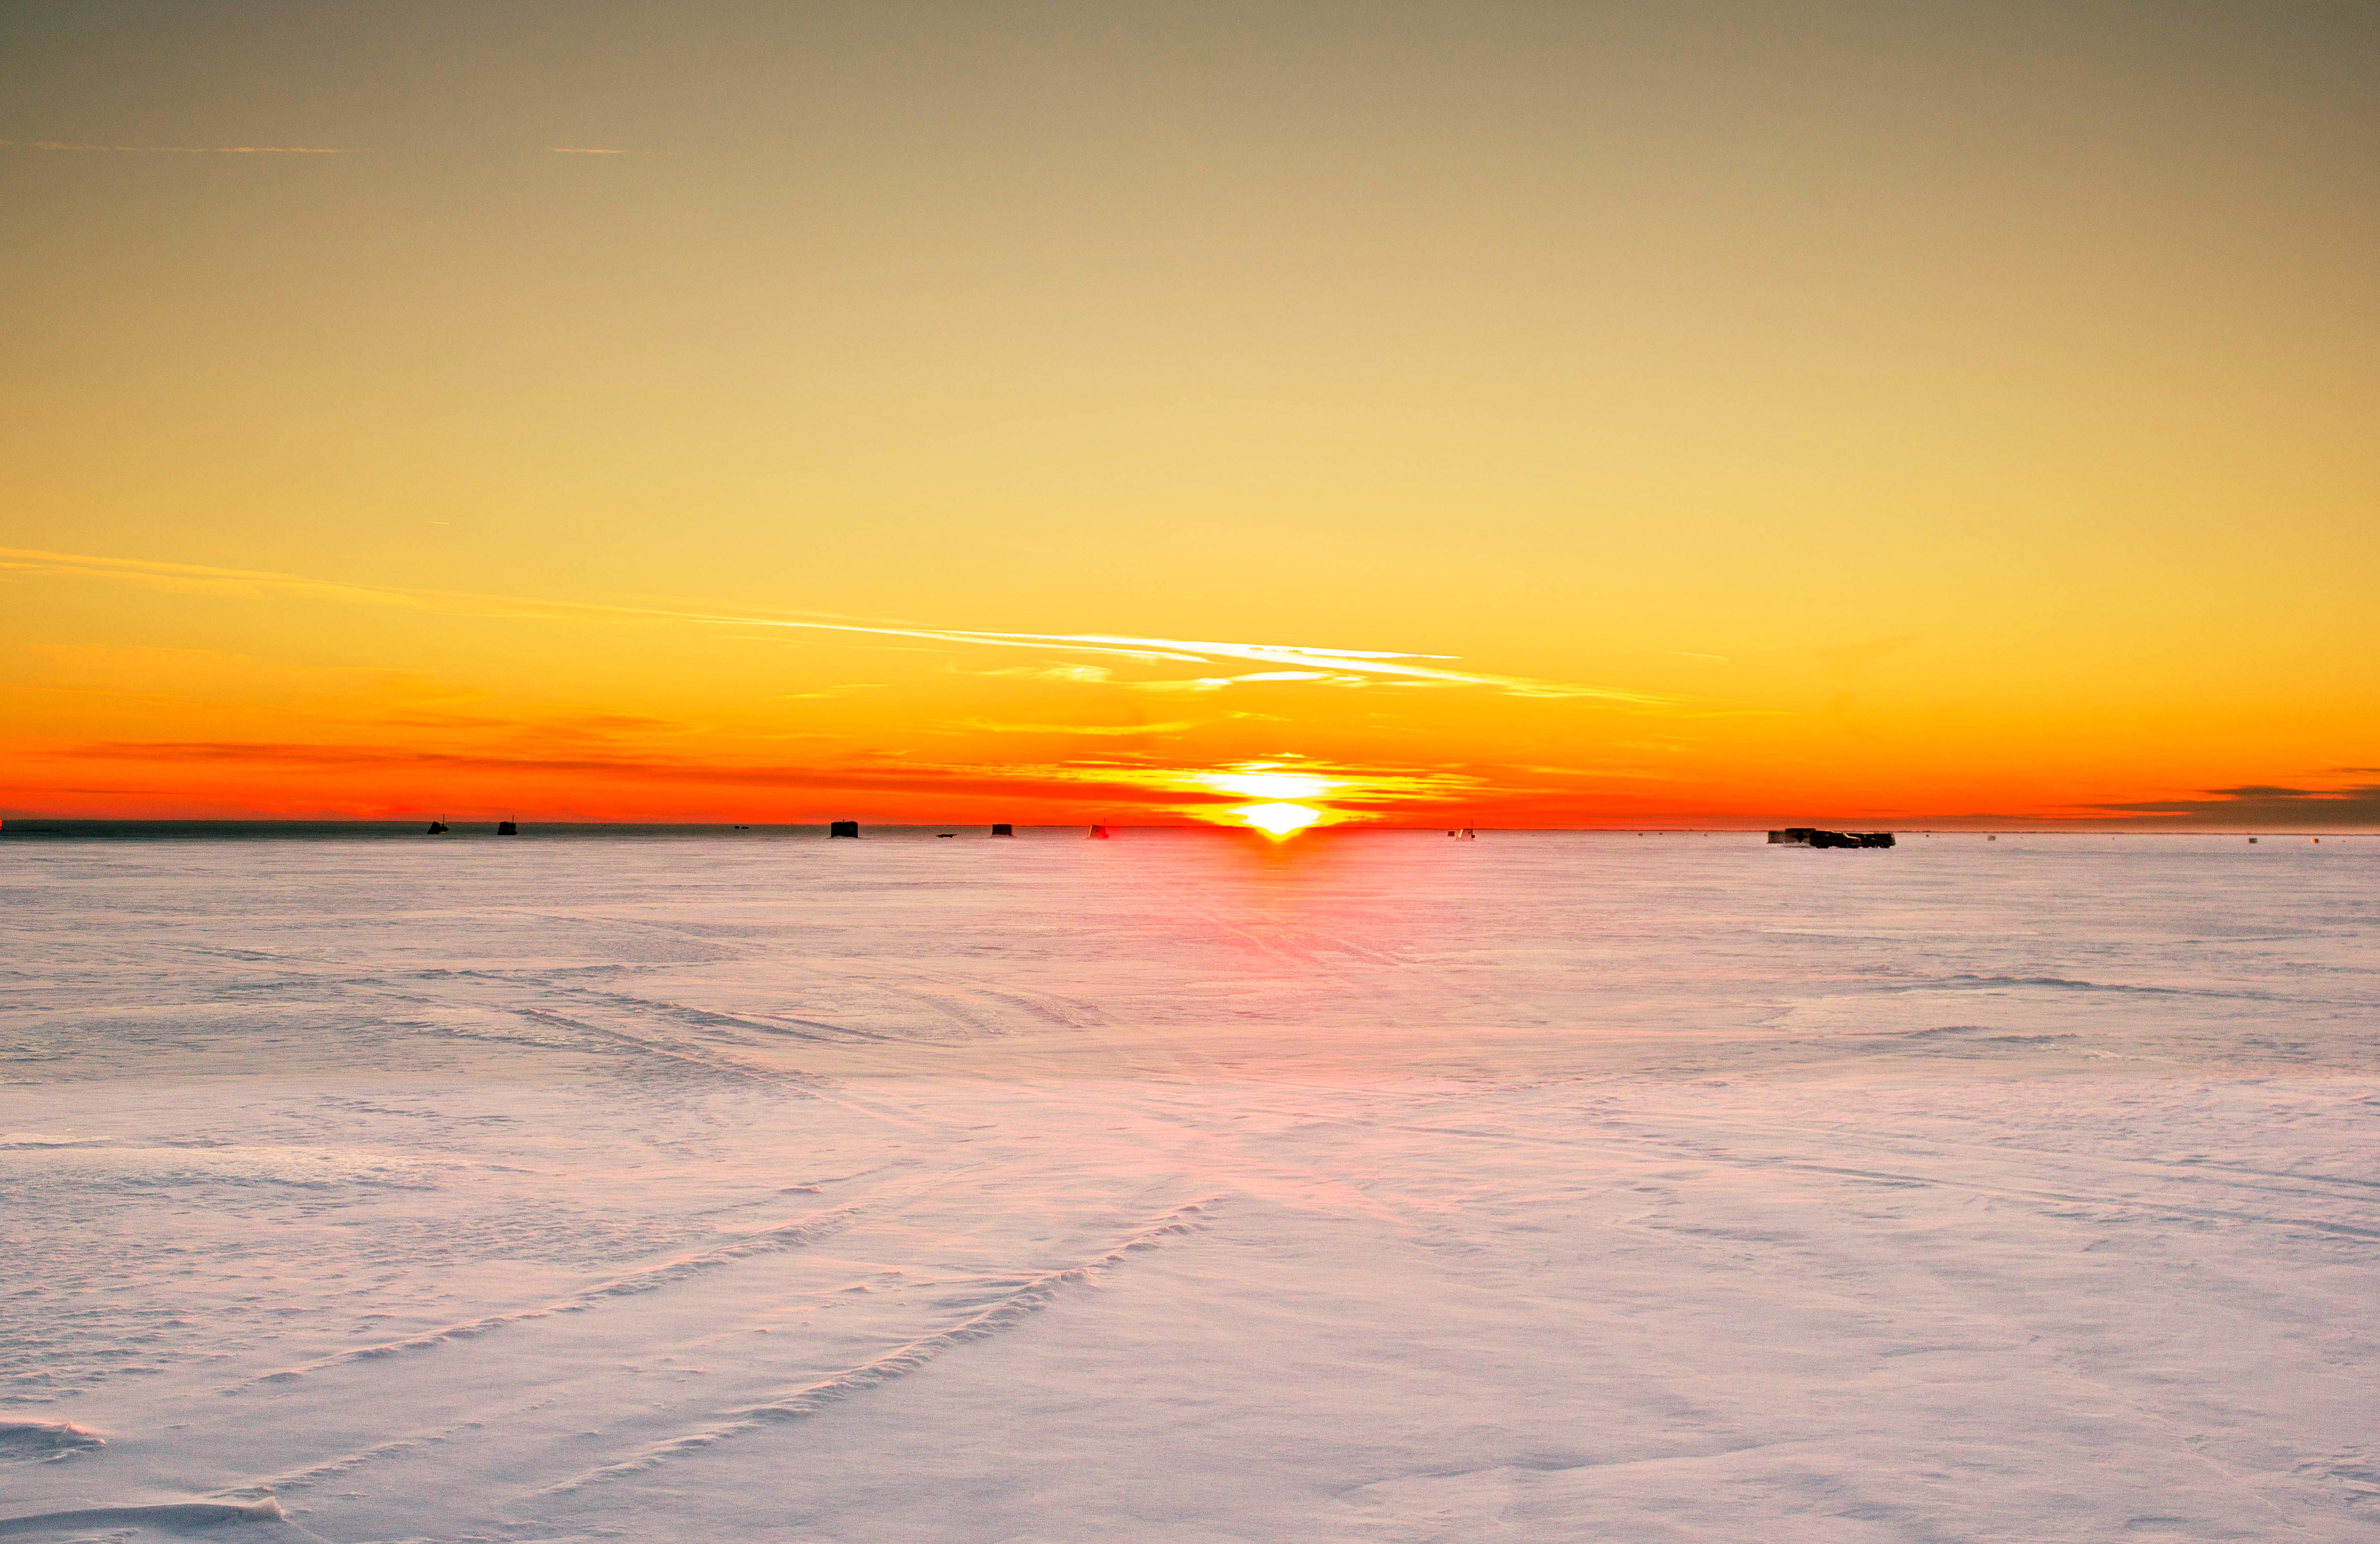 Sunset on Icy lake